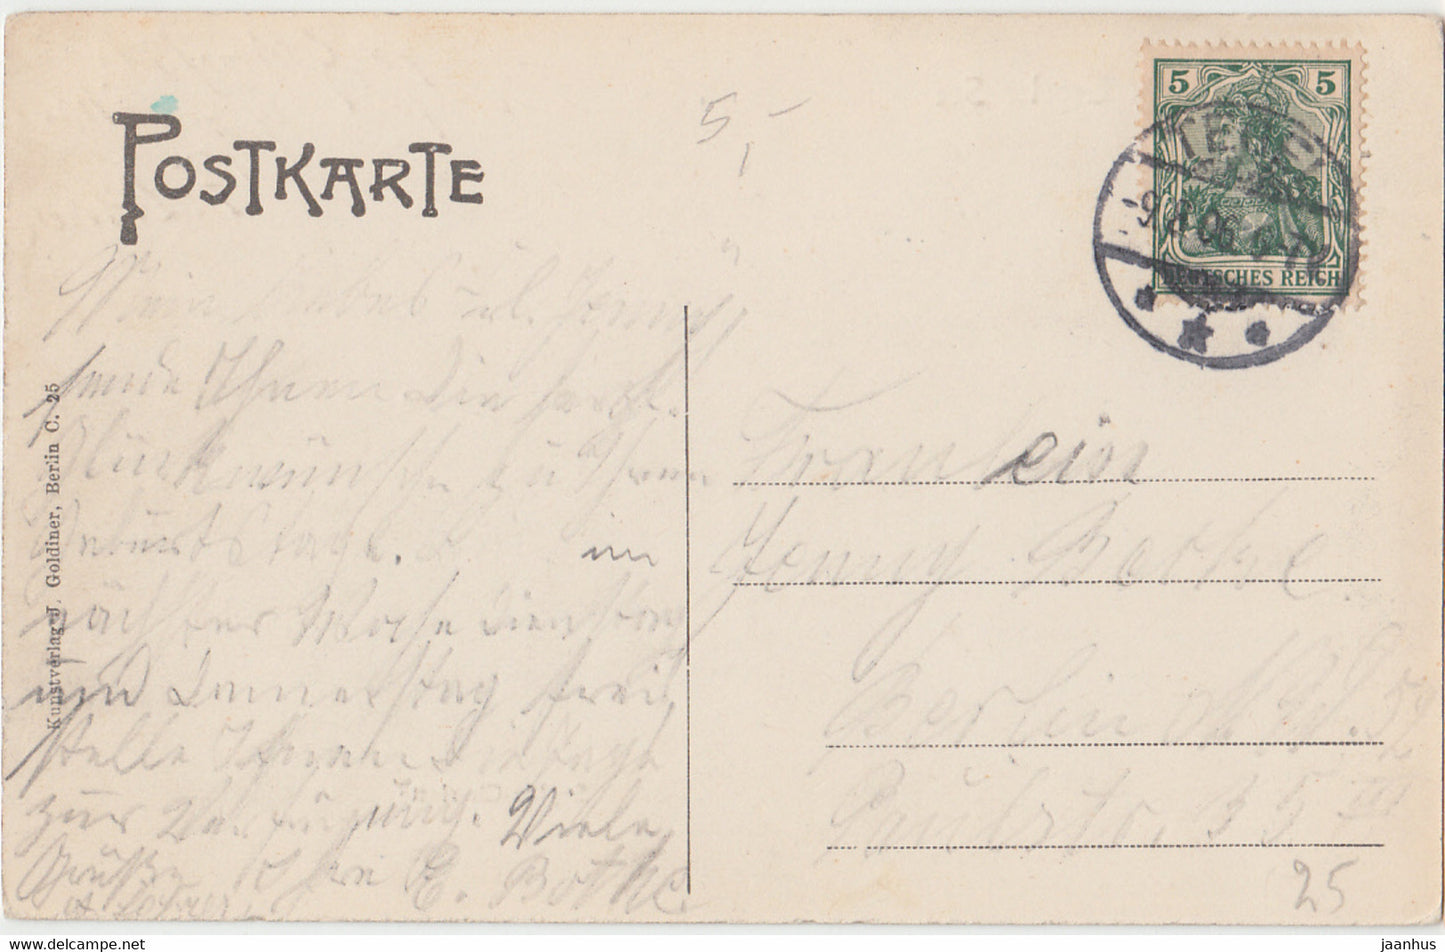 Gruss vom Tegeler See - steamer - boat - Sophie Charlotte - old postcard - 1906 - Germany - used